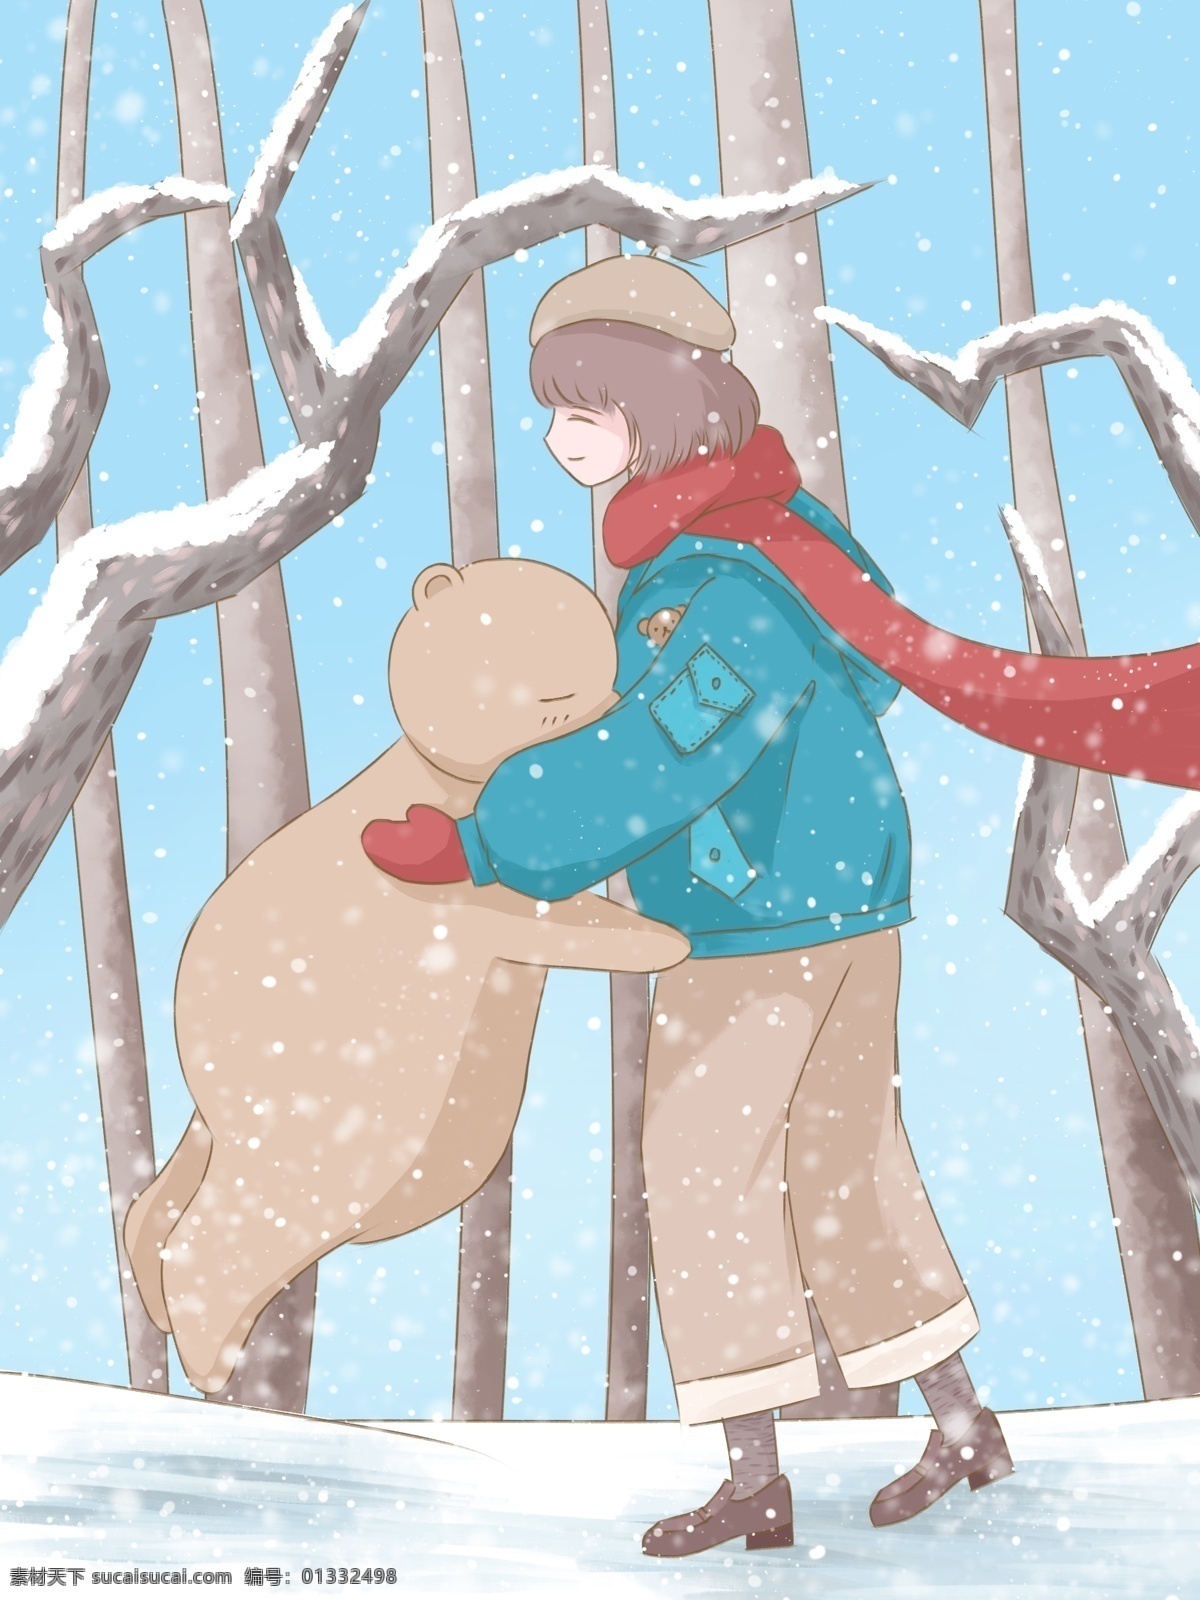 冬至 插画 冬天 树林 里 拥抱 女孩 小 熊 清新 可爱 壁纸 雪景 树 雪 小熊 冬装 治愈 背景 日签